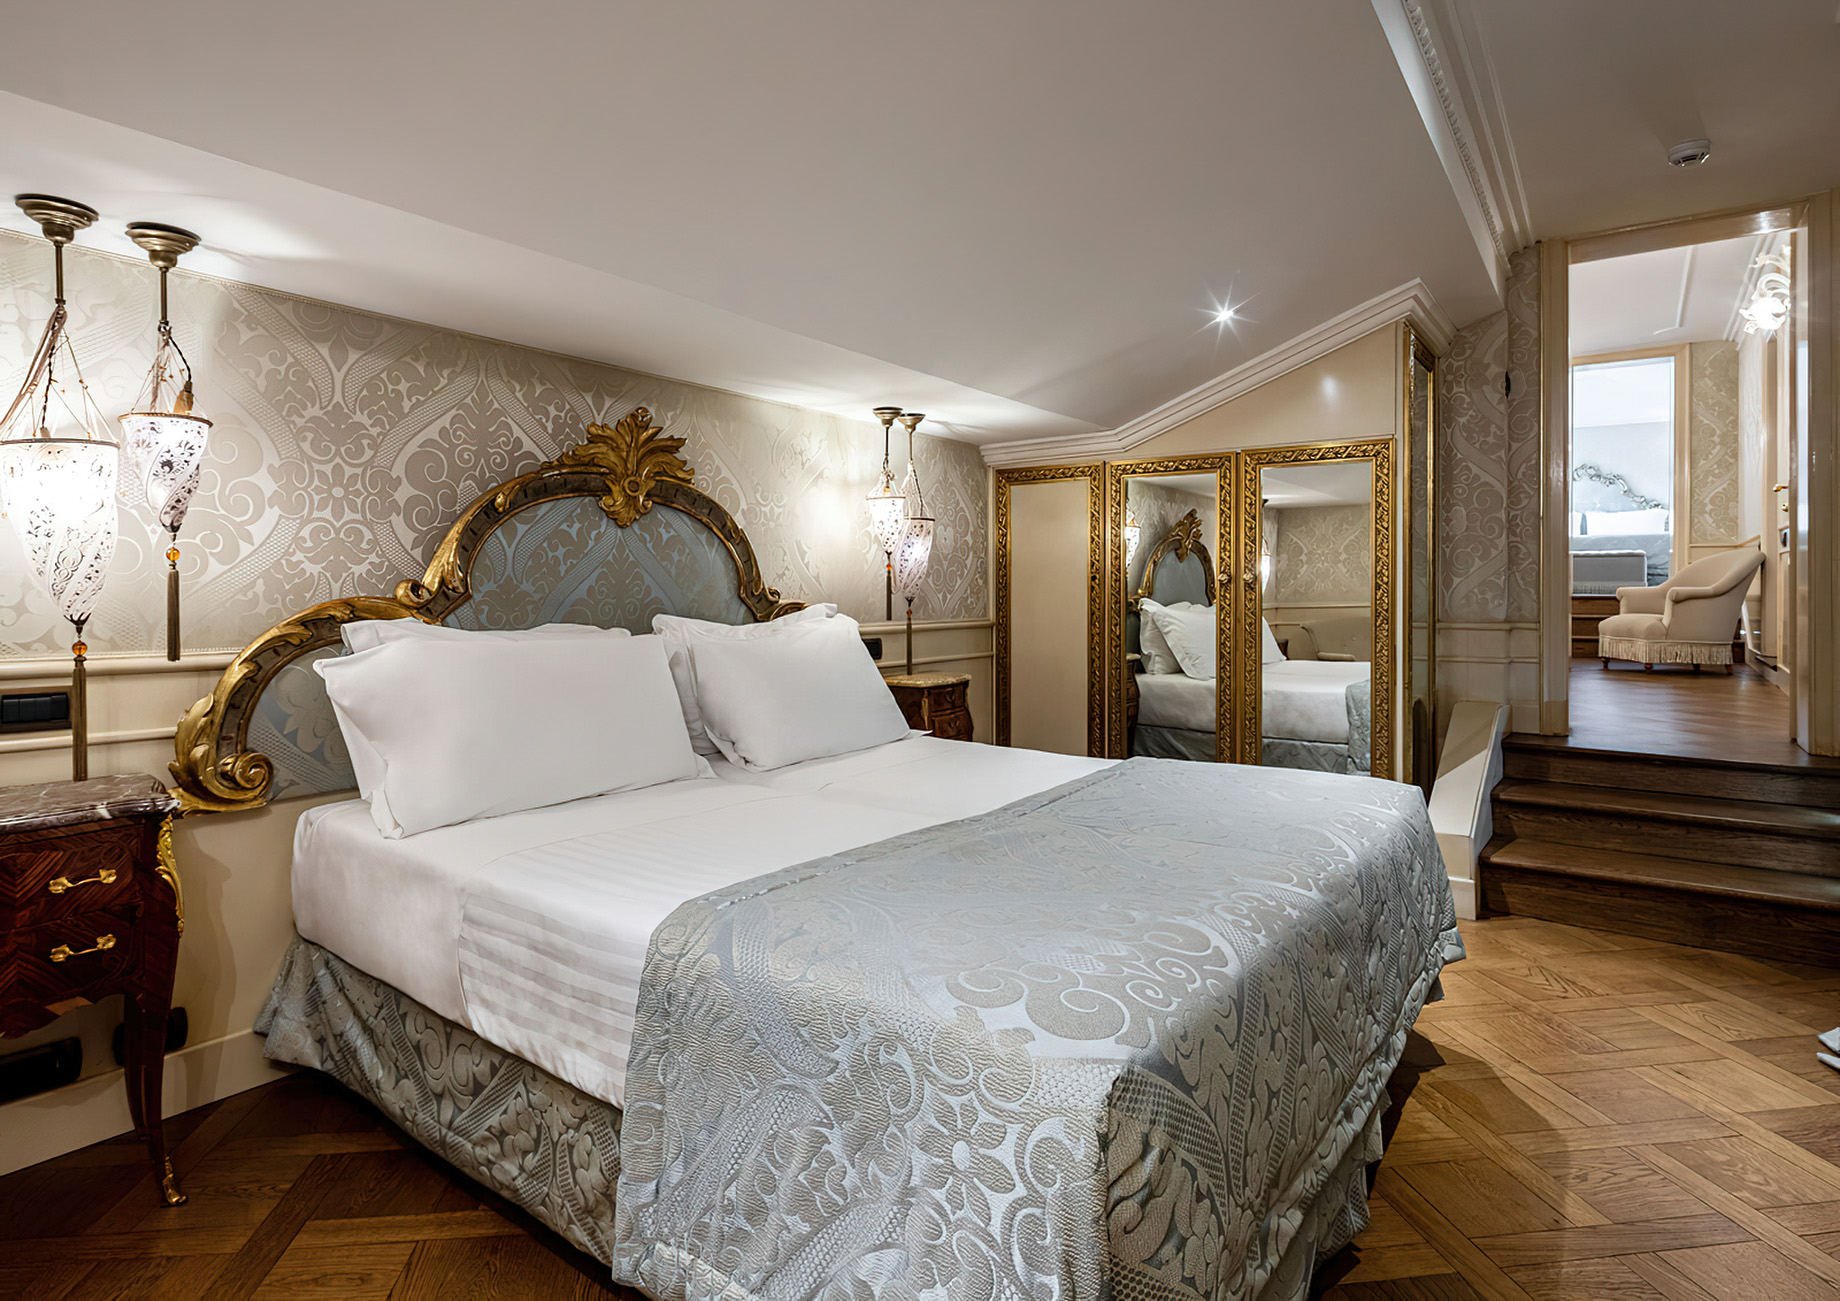 Baglioni Hotel Luna, Venezia – Venice, Italy – Goldoni Family Suite Bedroom Interior